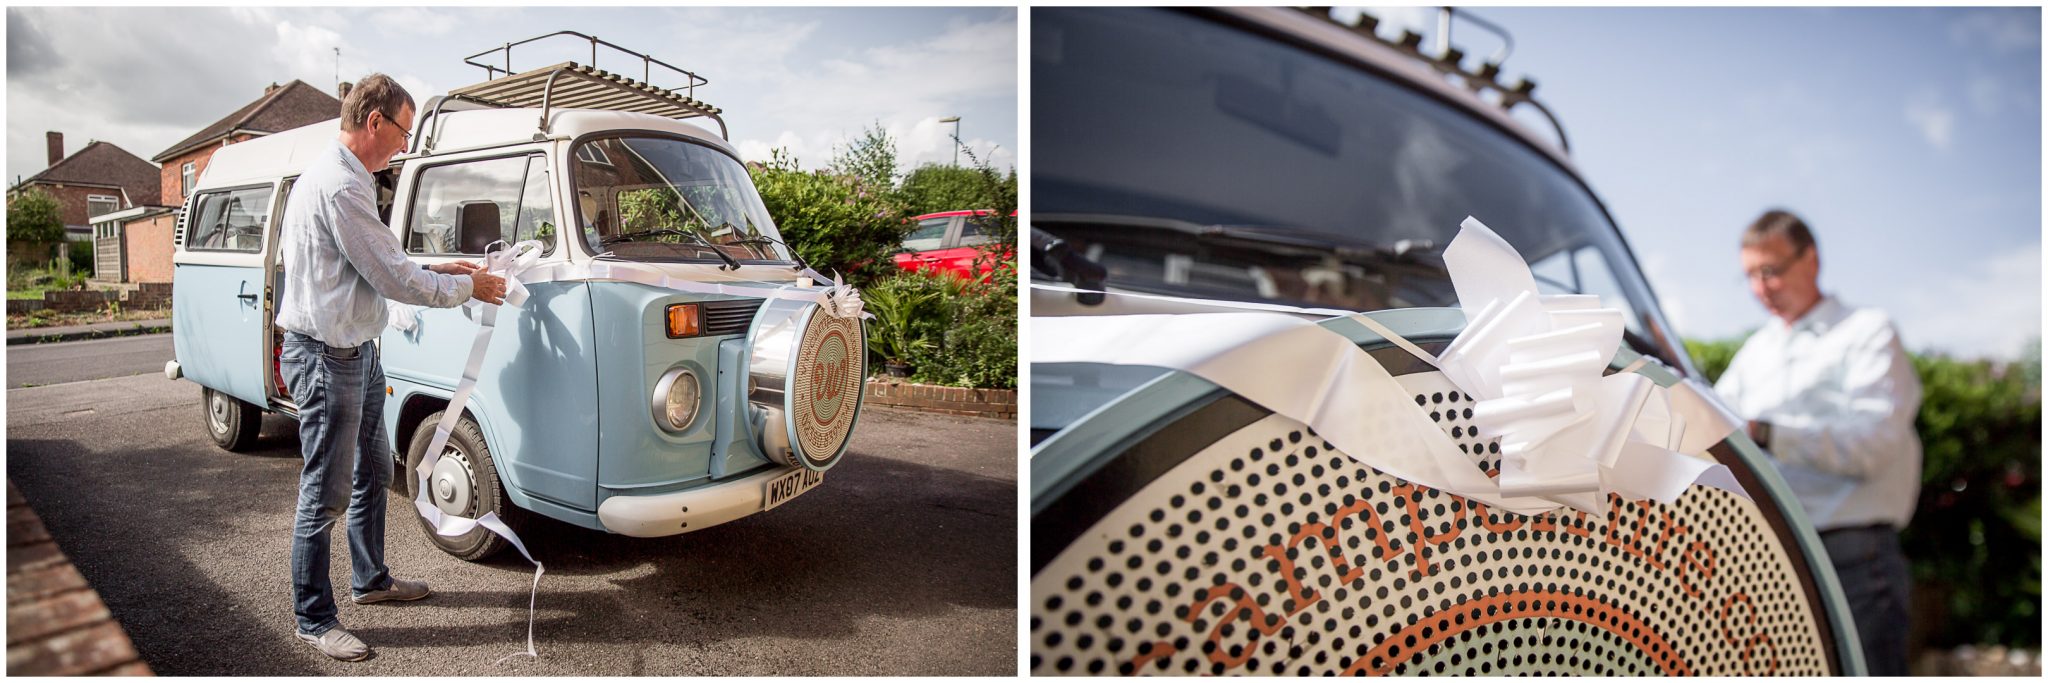 Timsbury Manor Festival Wedding ribbons on VW camper wedding car